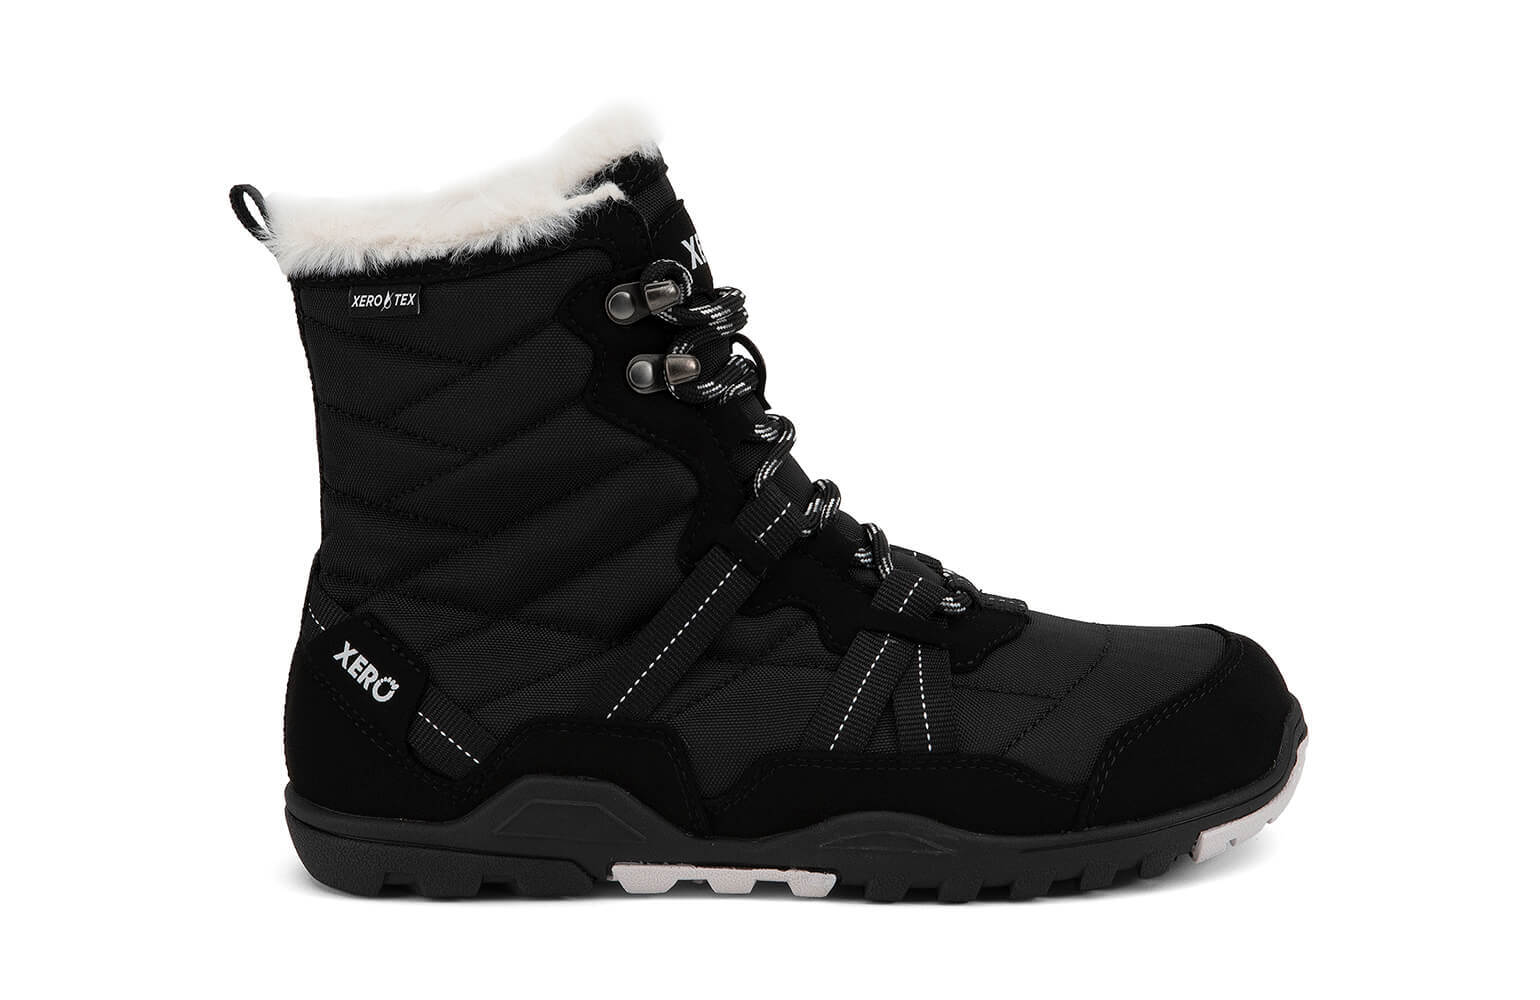 Xero Shoes | Alpine | black [AEW-BLC] dames, maat 40 eu